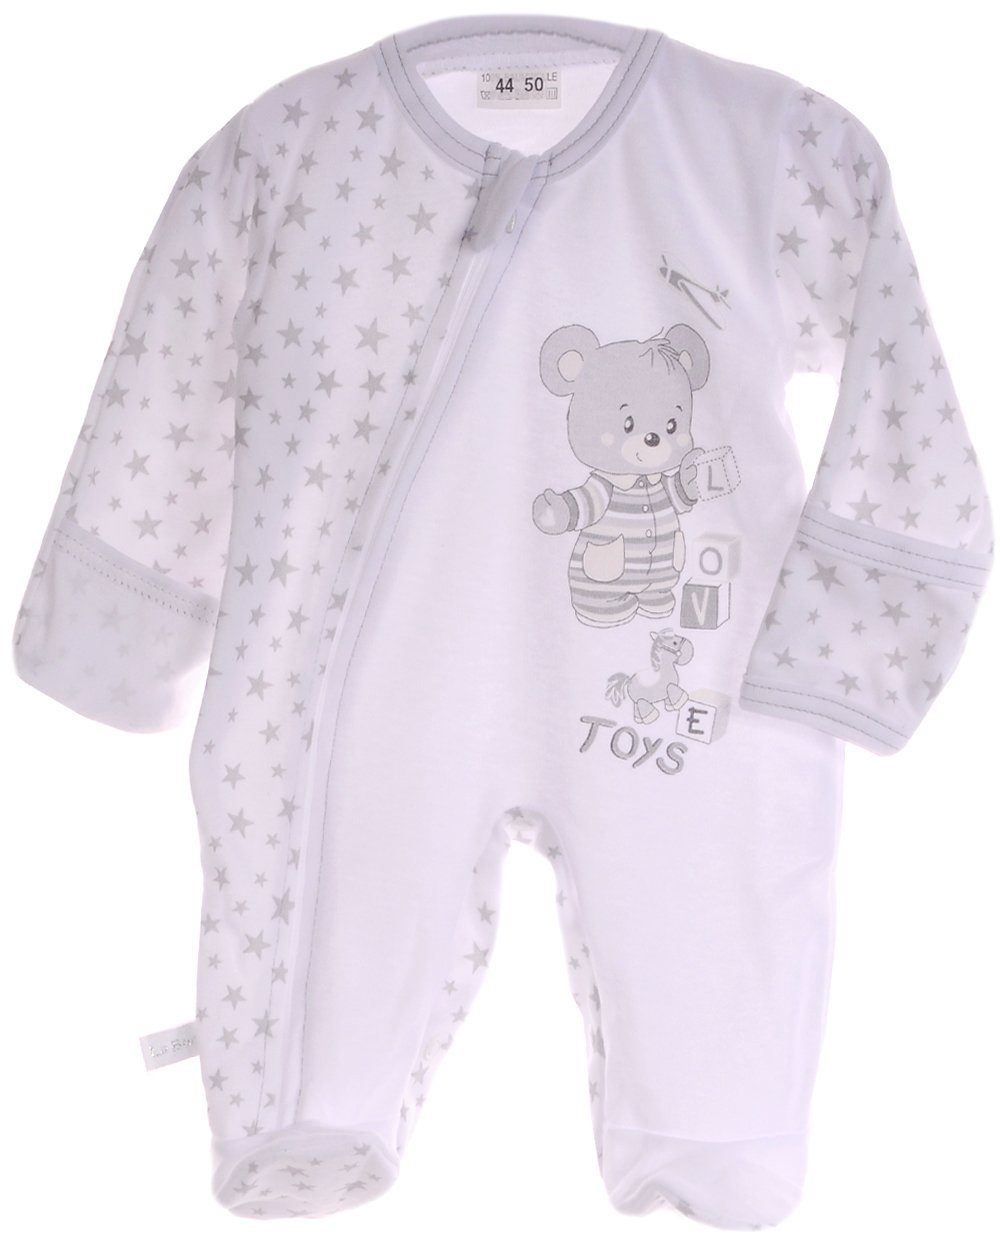 NEU ♥ Jungen Strampler Overall Baby Schlafanzug Gr 56 62 